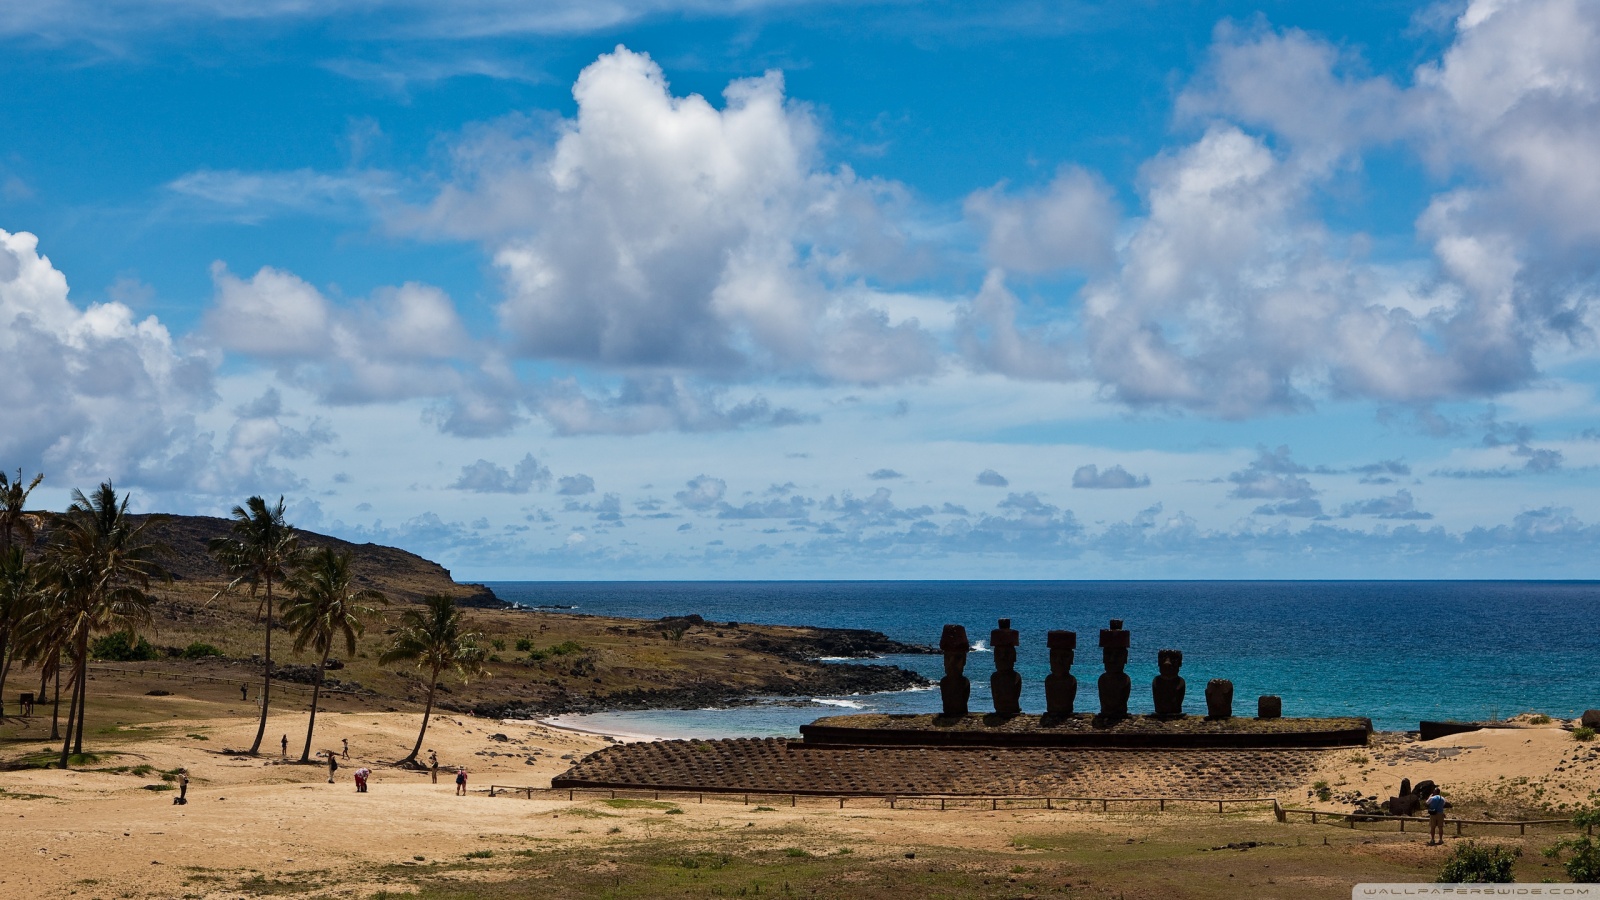 Easter Island Statues 4k HD Desktop Wallpaper For Ultra